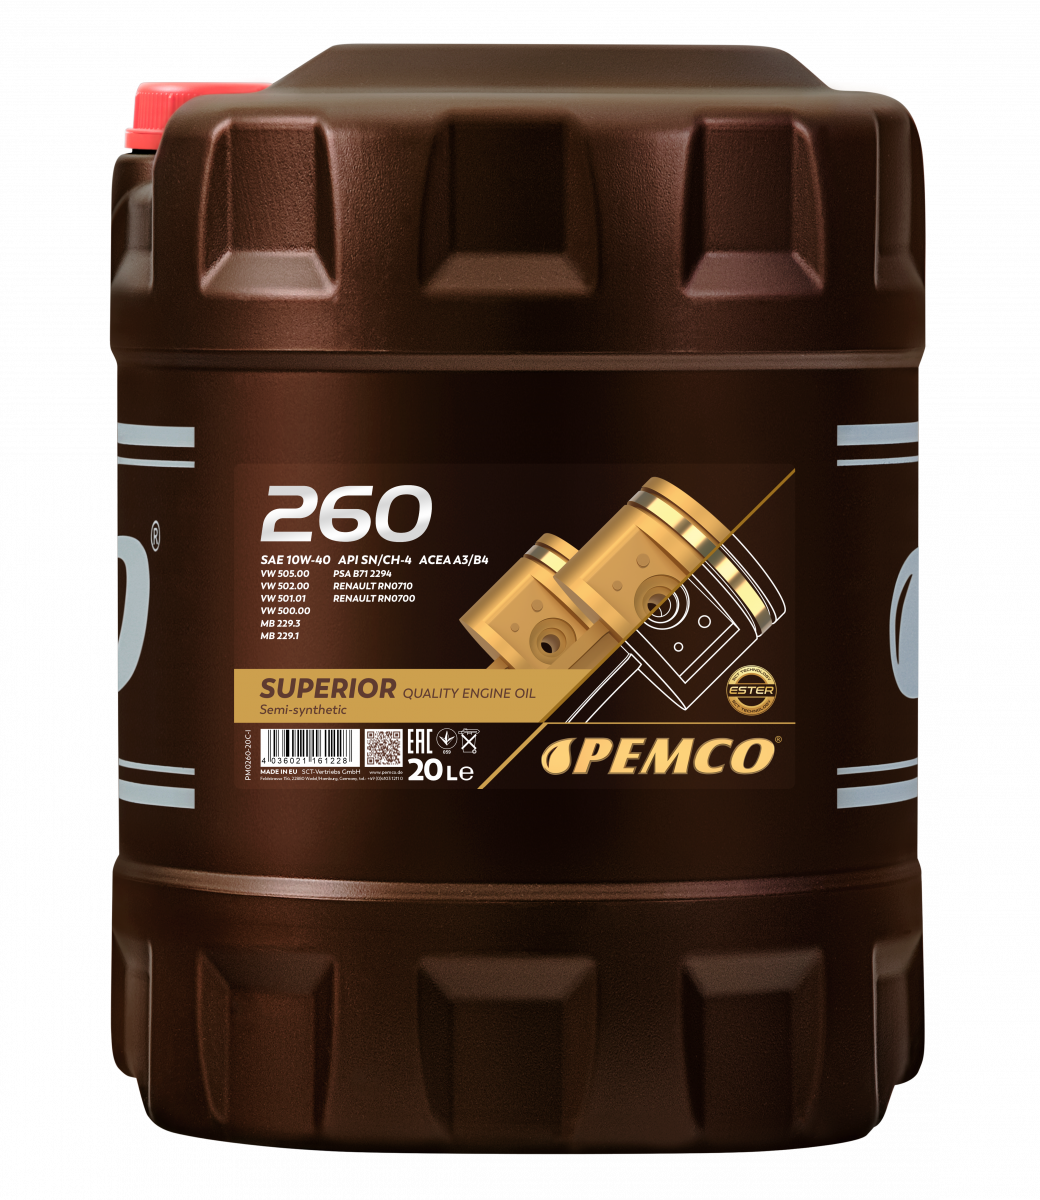 PEMCO PM026020 10W-40 SN/CH-4 , A3/B4 20л (полусинт. мотор. масло)